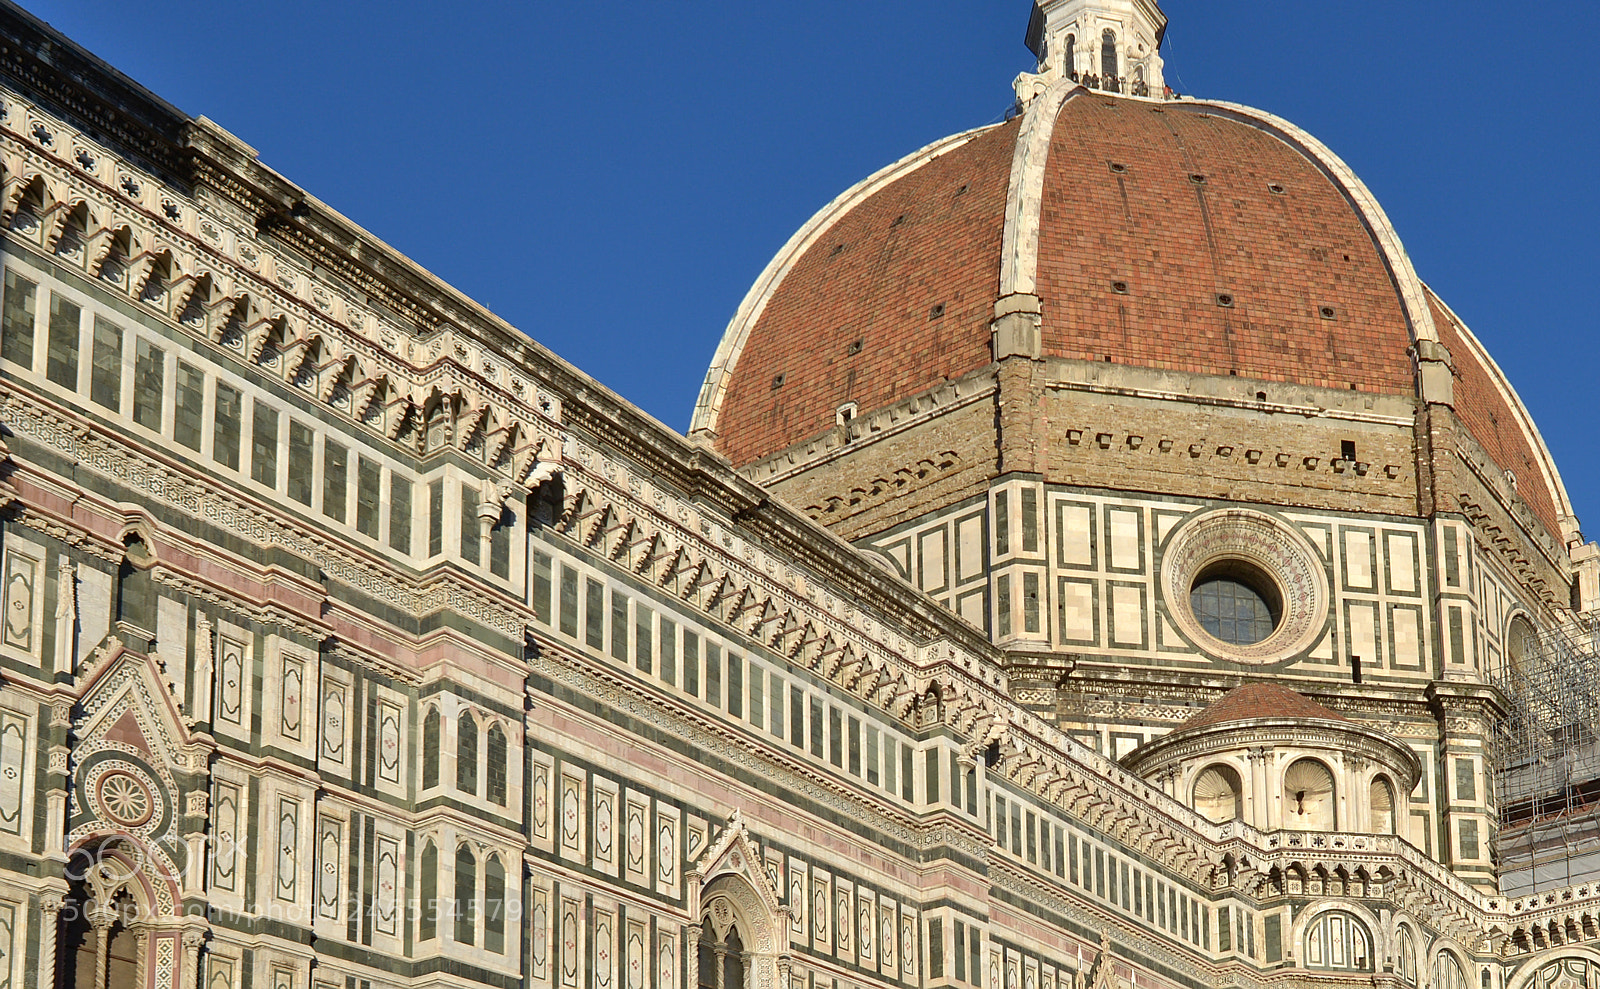 Nikon D600 sample photo. Brunelleschi's dome photography